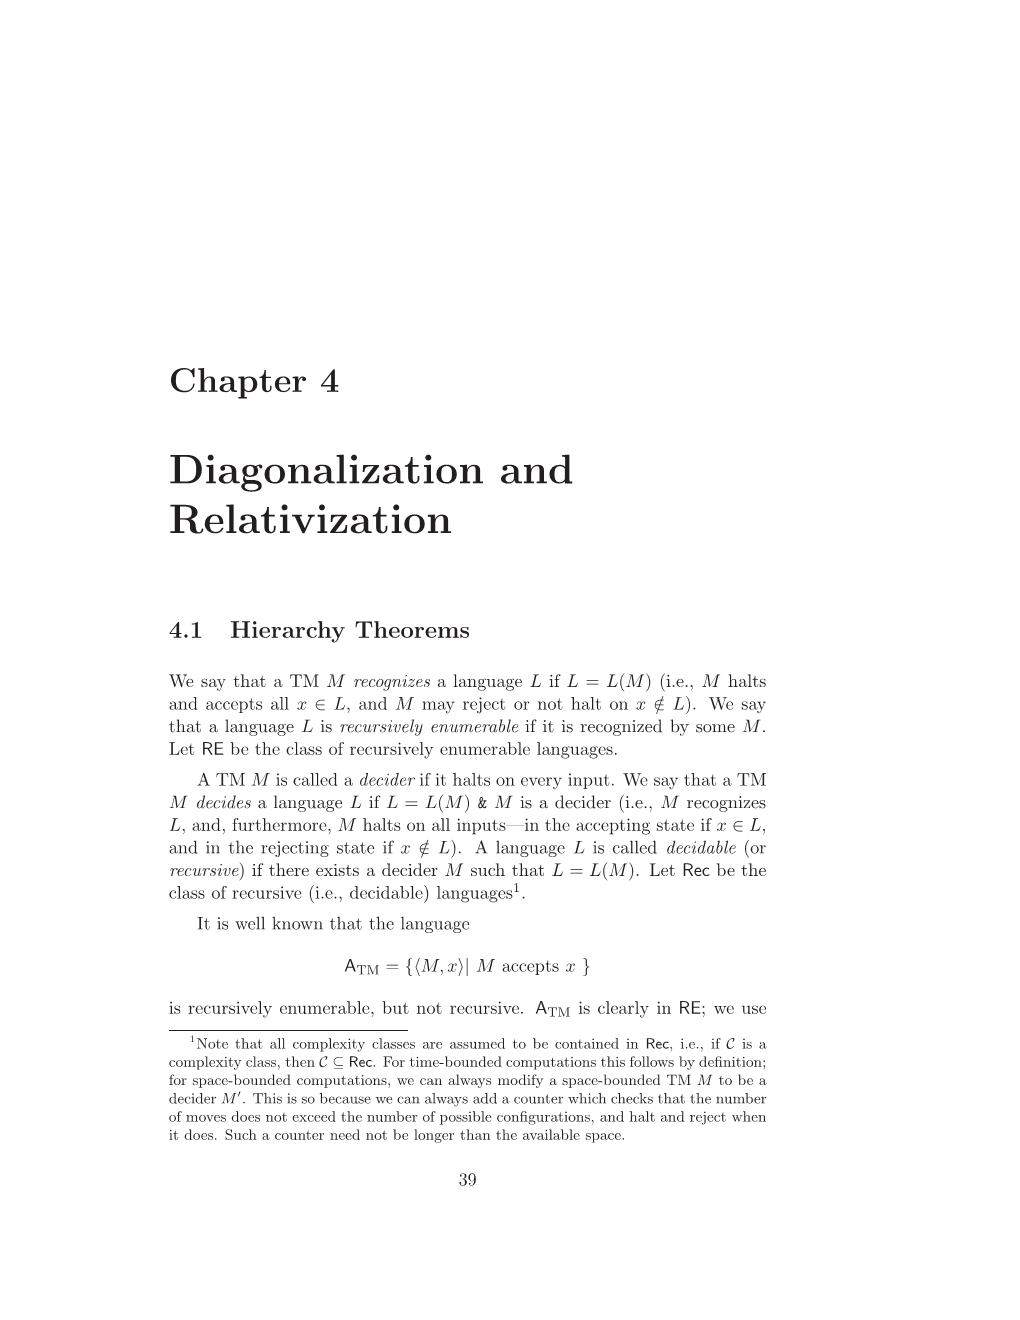 Diagonalization and Relativization